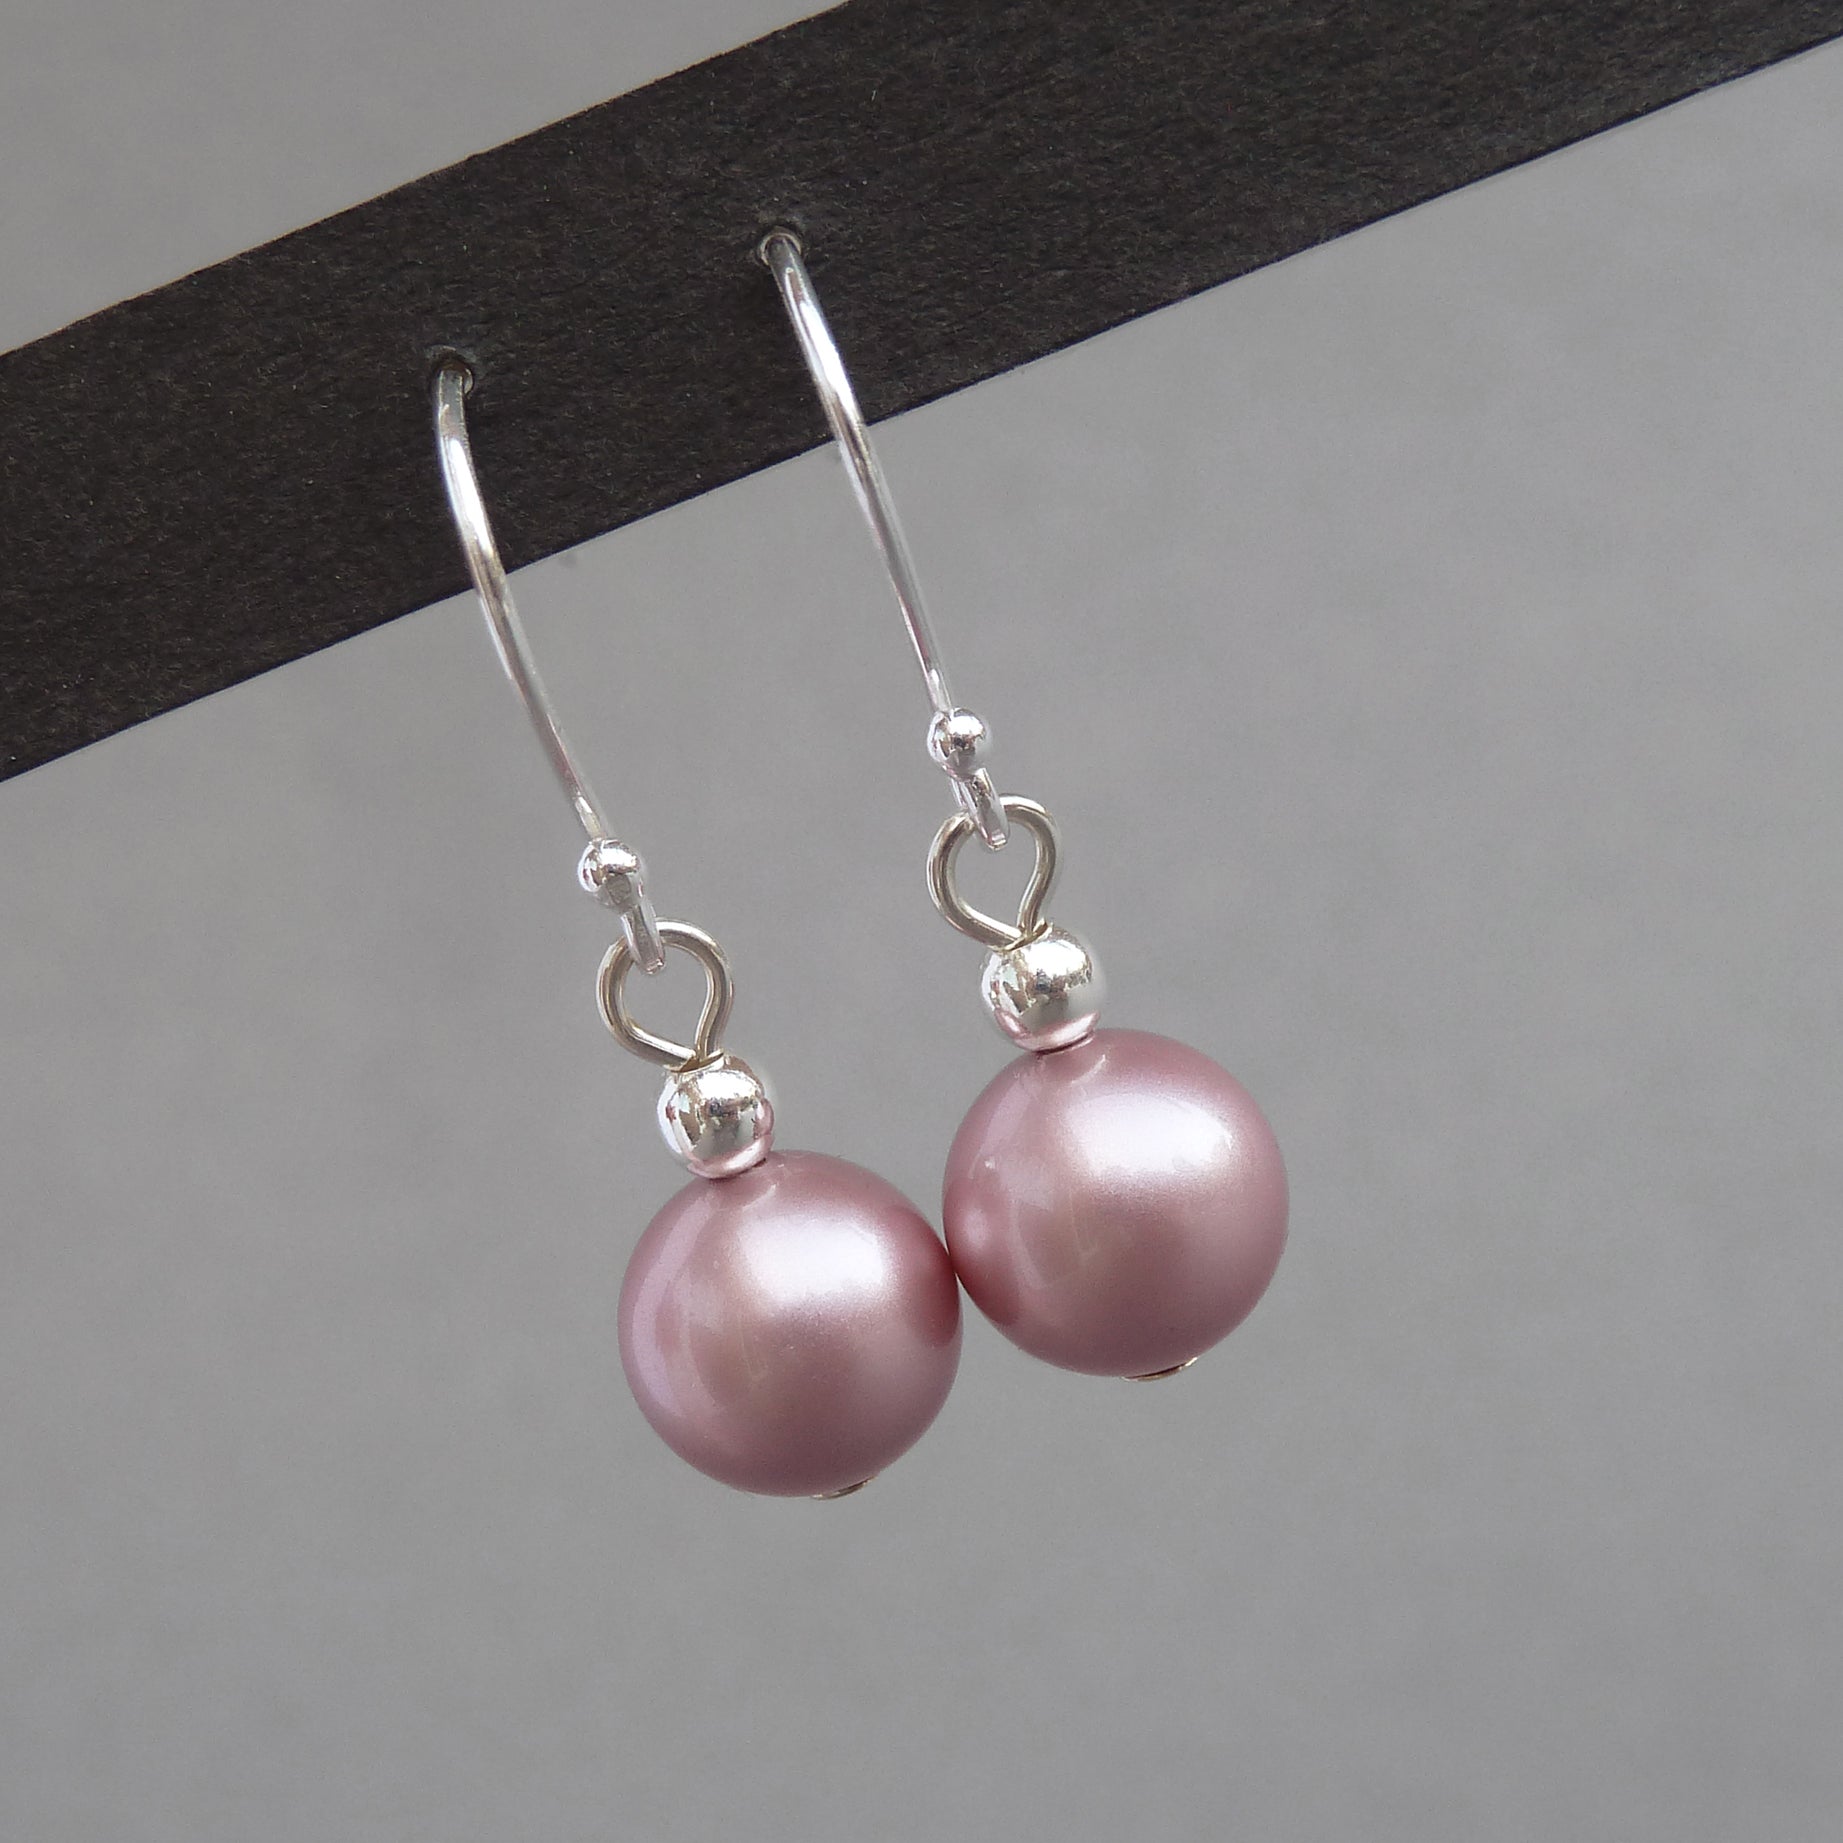 Dusky pink bridesmaids earrings